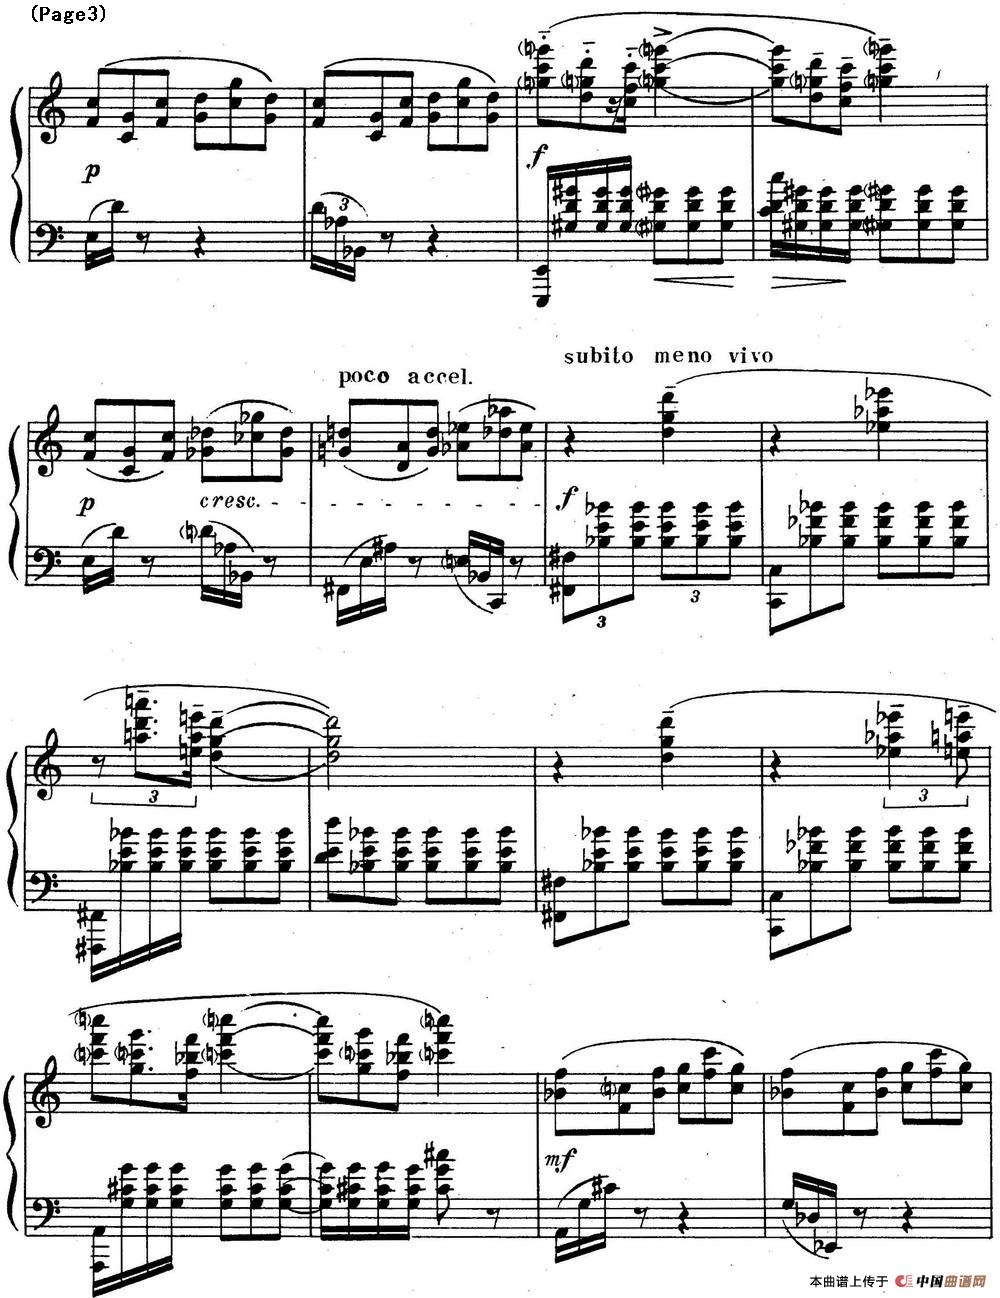 斯克里亚宾3首钢琴练习曲 Op65（No.3）(1)_Scriabin Etude Op.65 No.3_页面_3.jpg